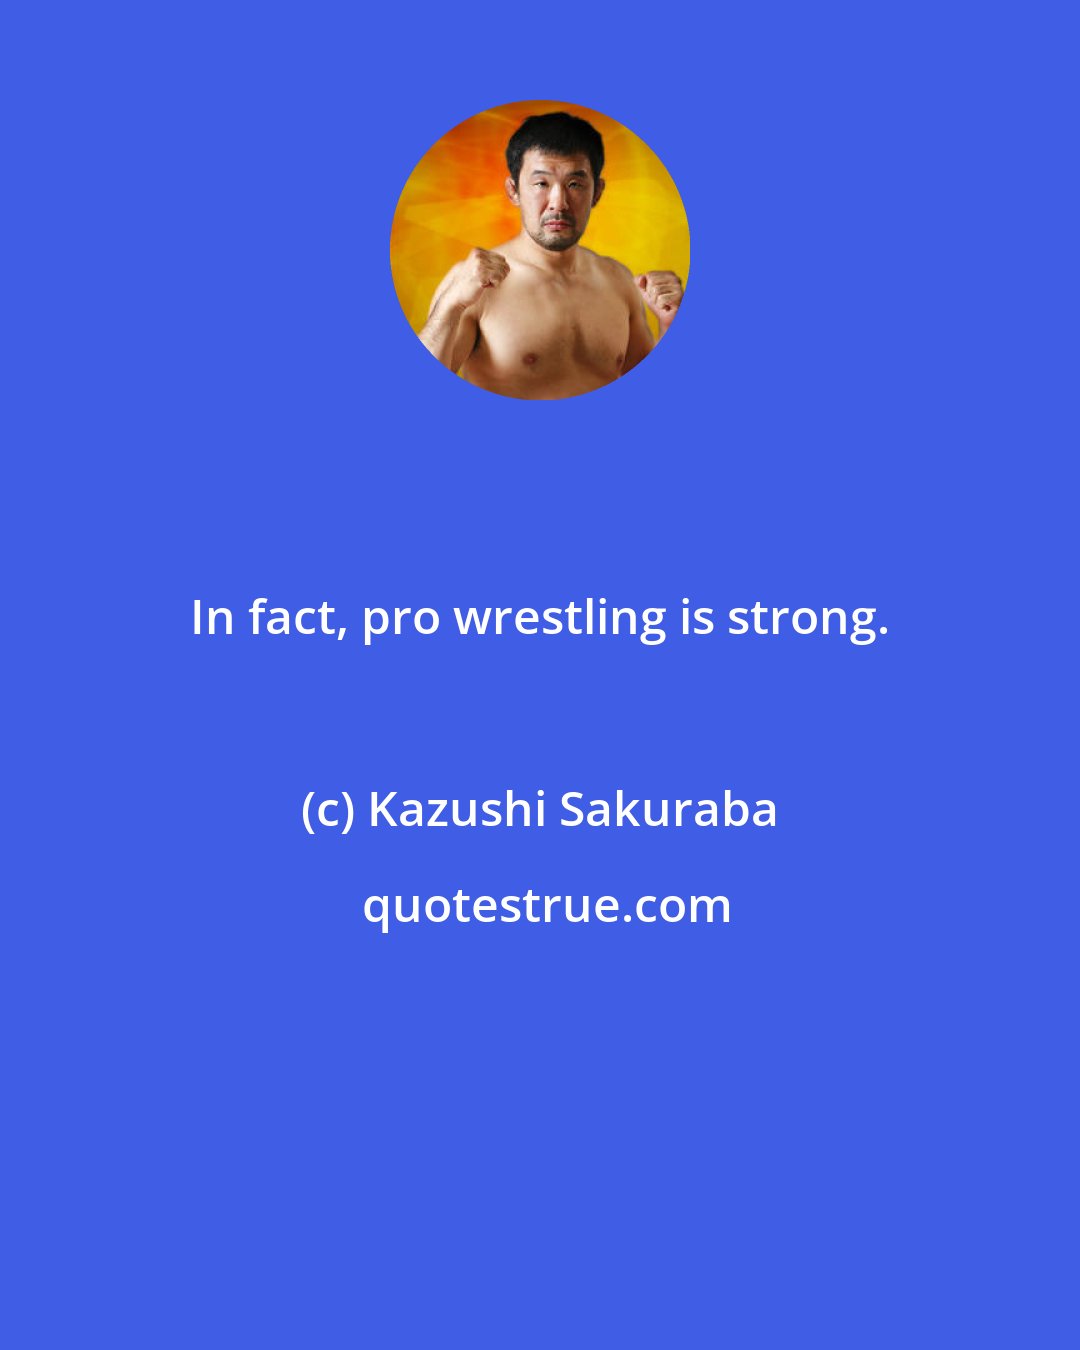 Kazushi Sakuraba: In fact, pro wrestling is strong.